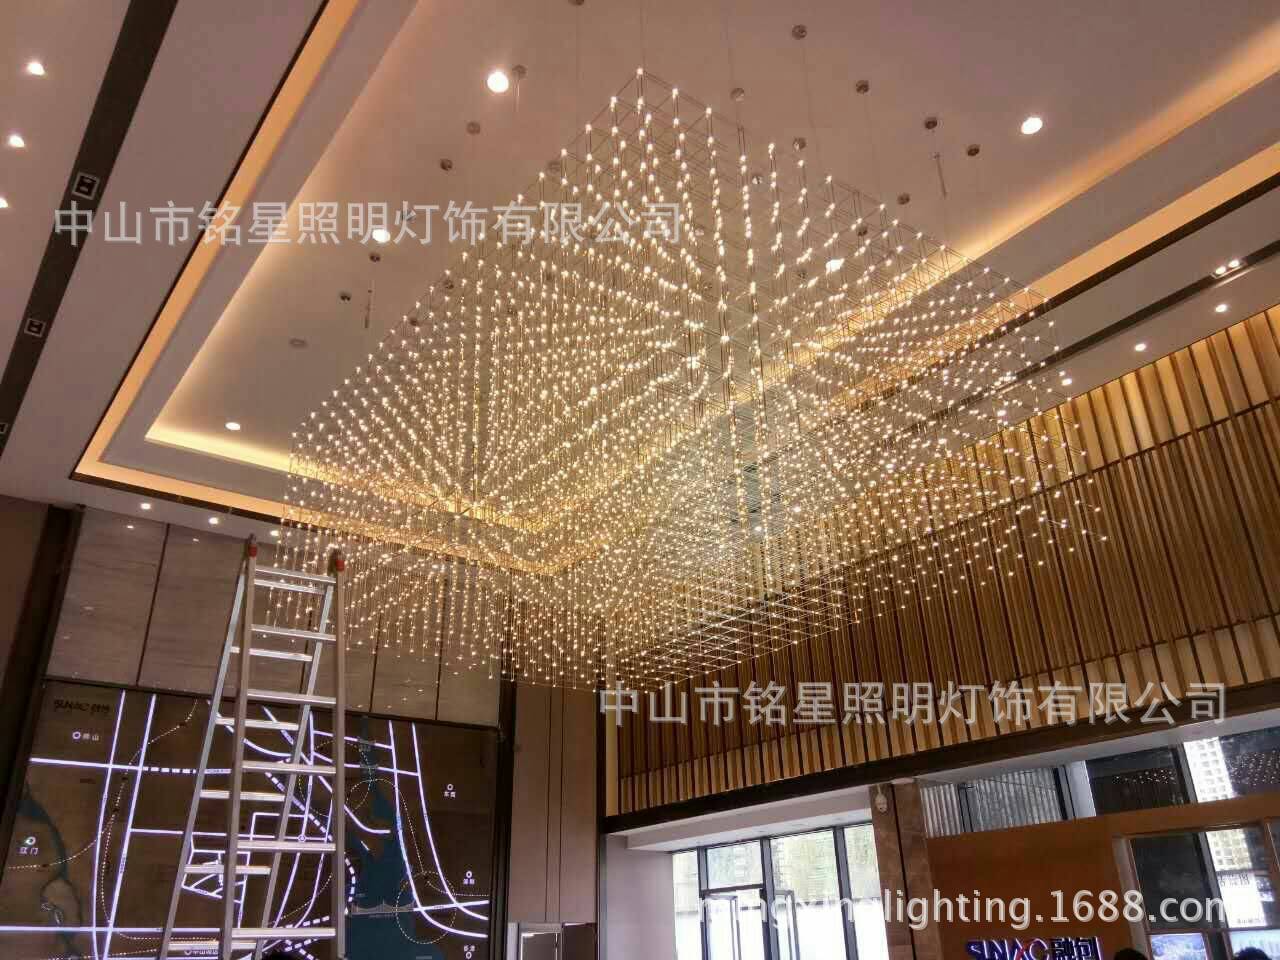 专业酒店大堂大型光立方吊灯厂家定制售楼部展厅LED光立方体灯具示例图18